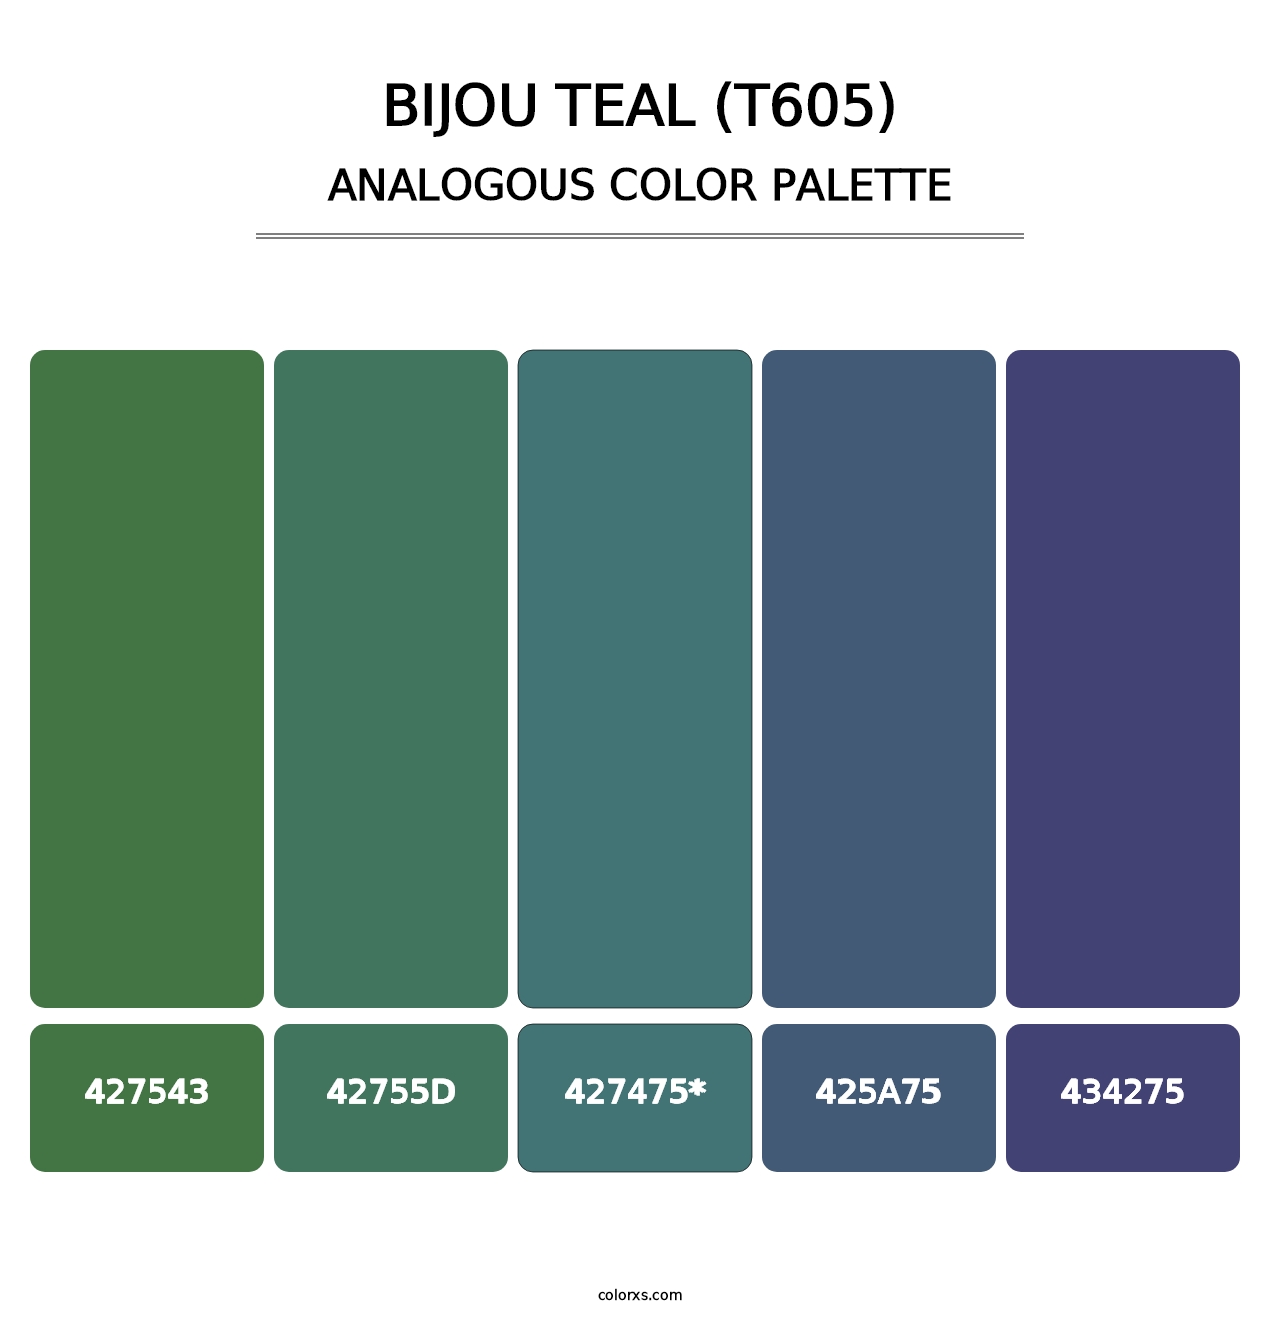 Bijou Teal (T605) - Analogous Color Palette